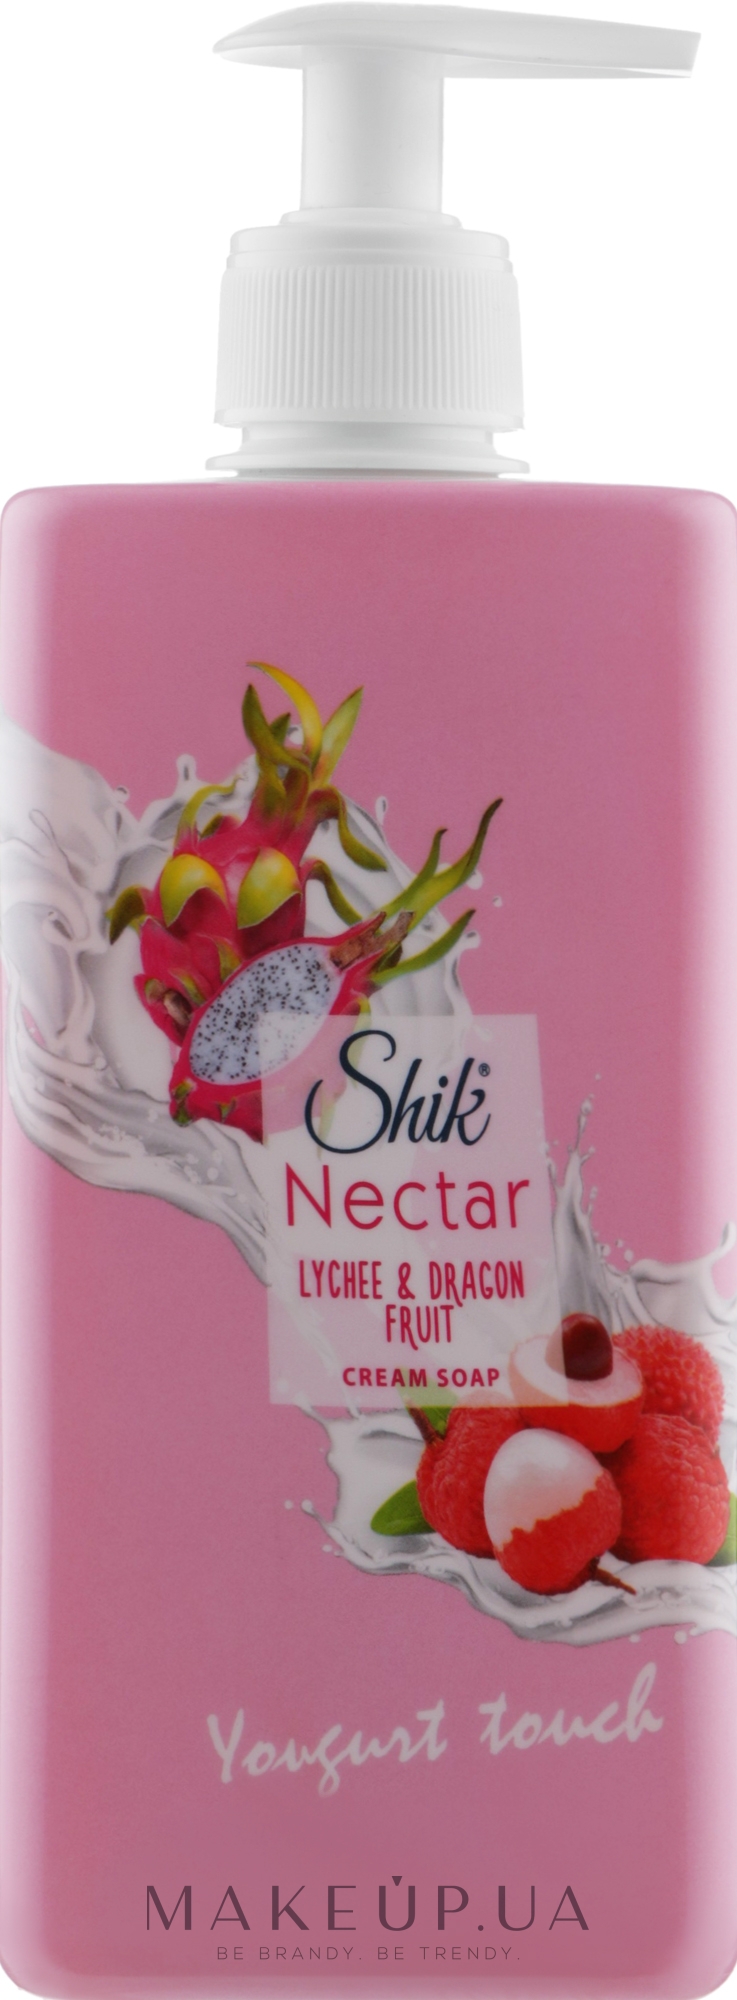 Рідке гель-мило для тіла й рук "Лічі й пітахайя" - Shik Nectar Lychee & Dragon Fruit Gel Soap — фото 450g